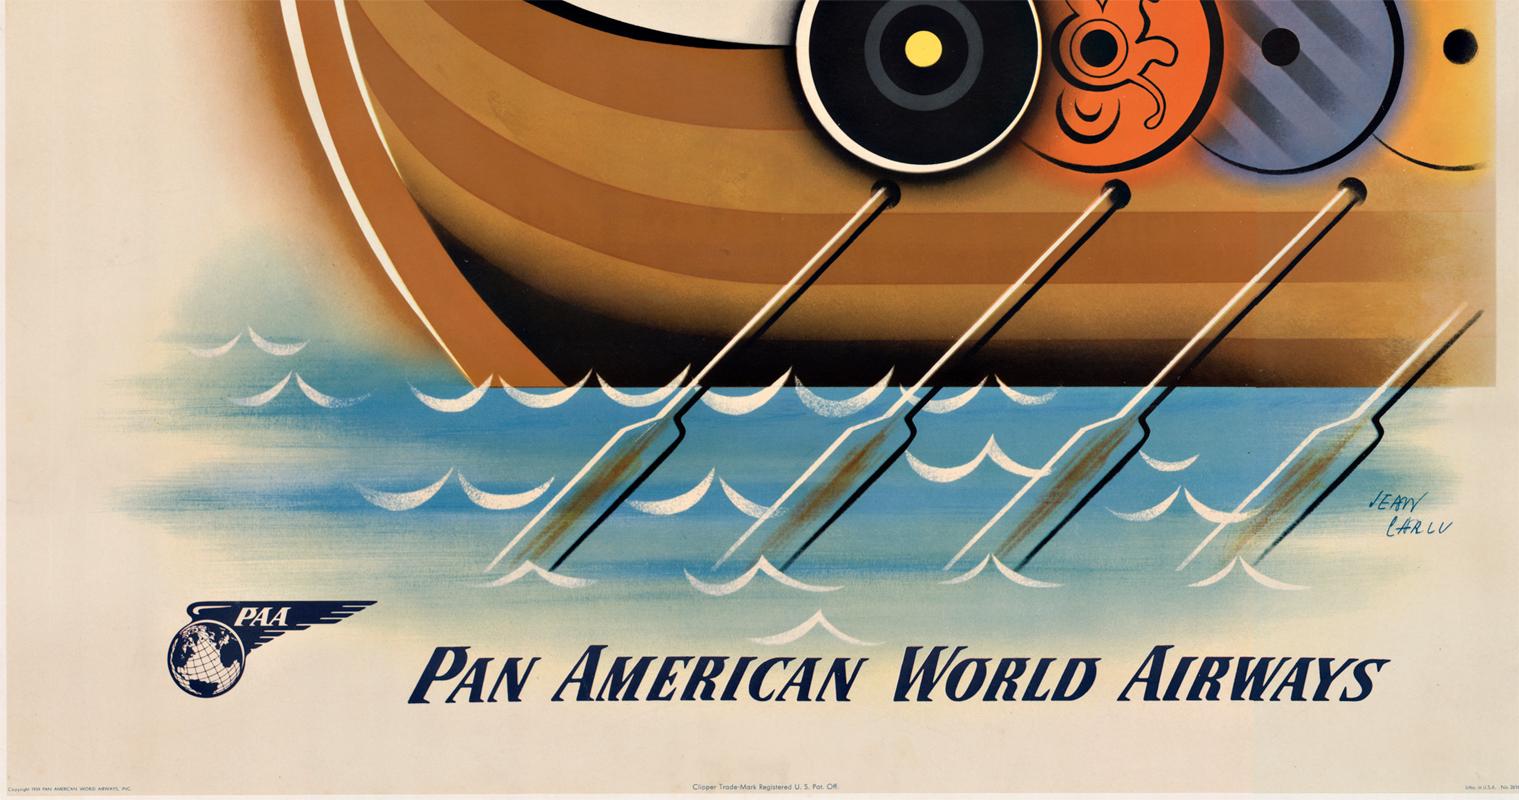 Affiche de voyage vintage originale :  Pan American World Airways cy Clipper vers la Scandinavie.    Dos de lin archivistique et prêt à être encadré.
L'image centrale représente un navire viking crachant un dragon, avec ses rames et ses boucliers le